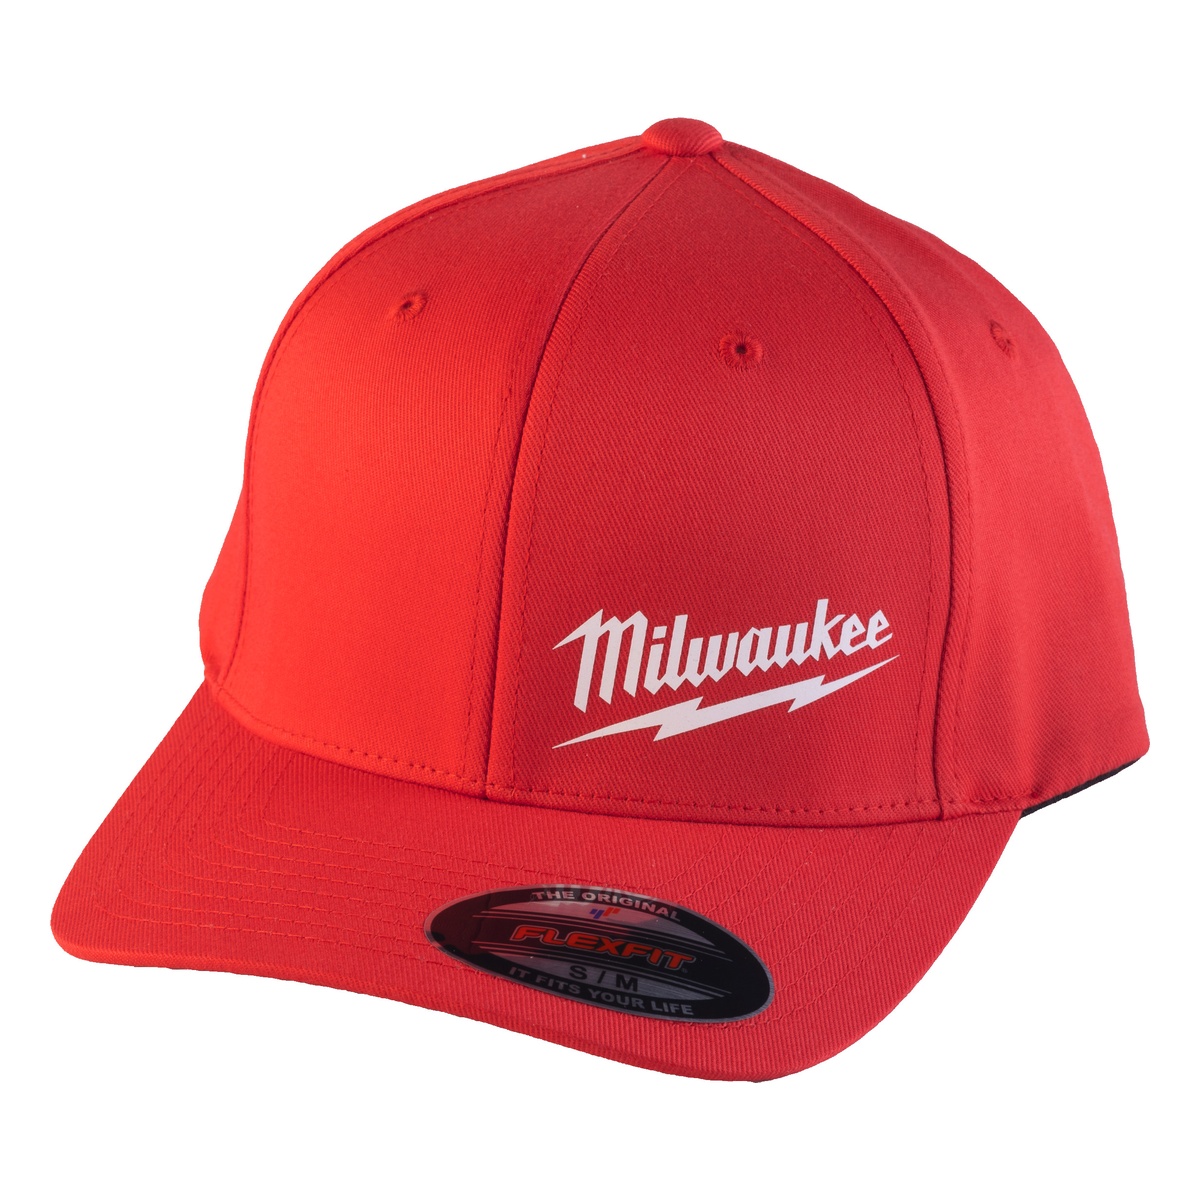 Milwaukee Baseball Kappe rot Größe S/M mit UV-Schutz BCSRD-S/M - 1 Stk.